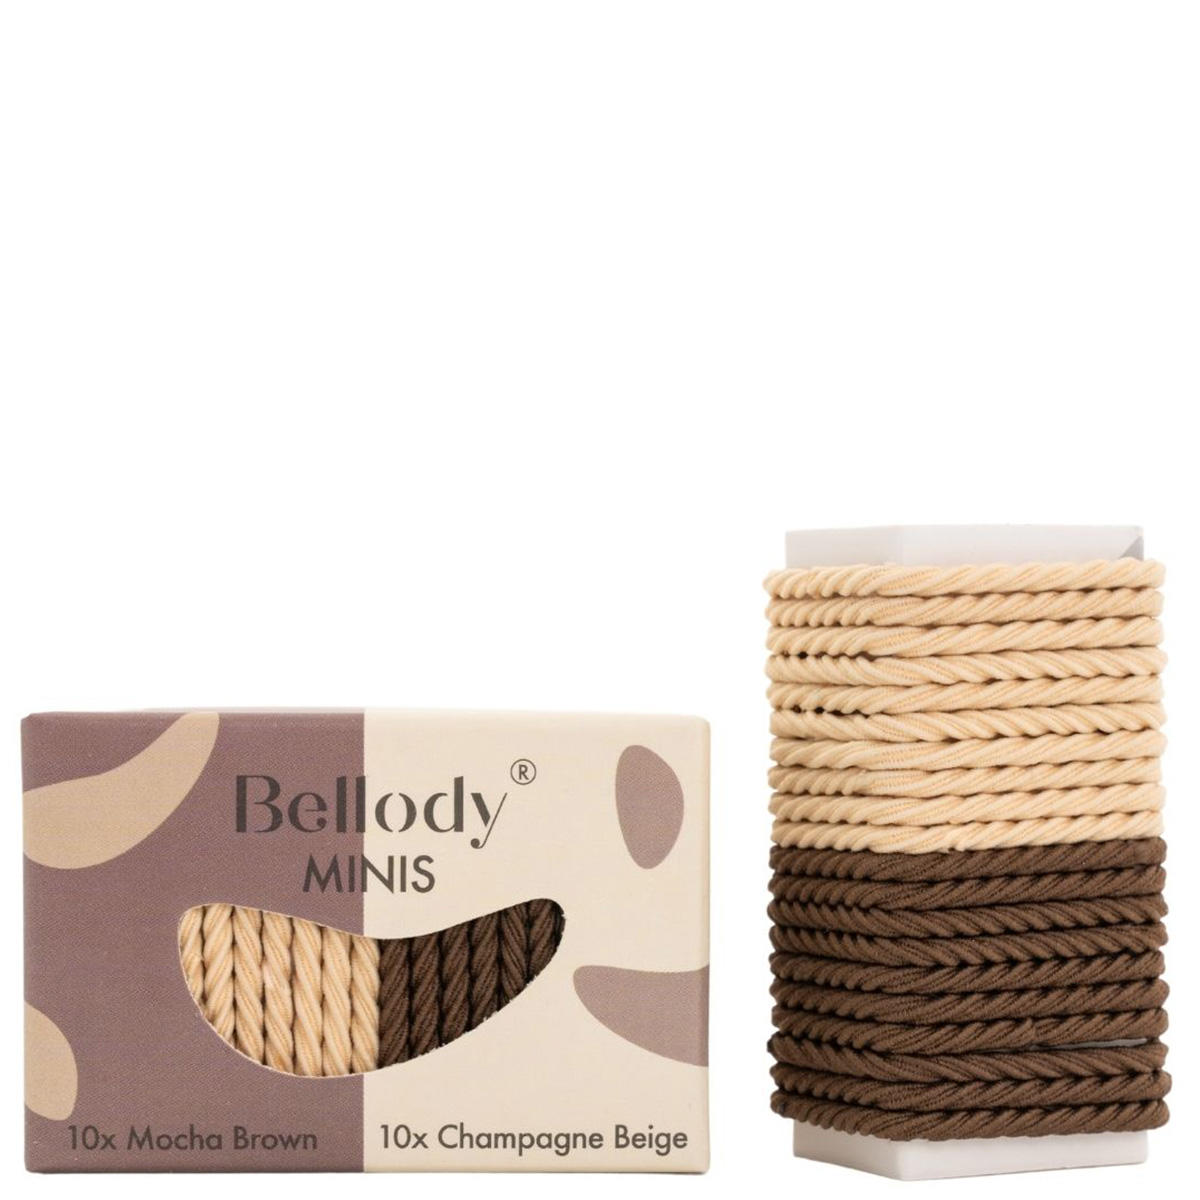 Bellody Minis Haargummis Mocha Brown/Champagne Beige 20 Stück - 1